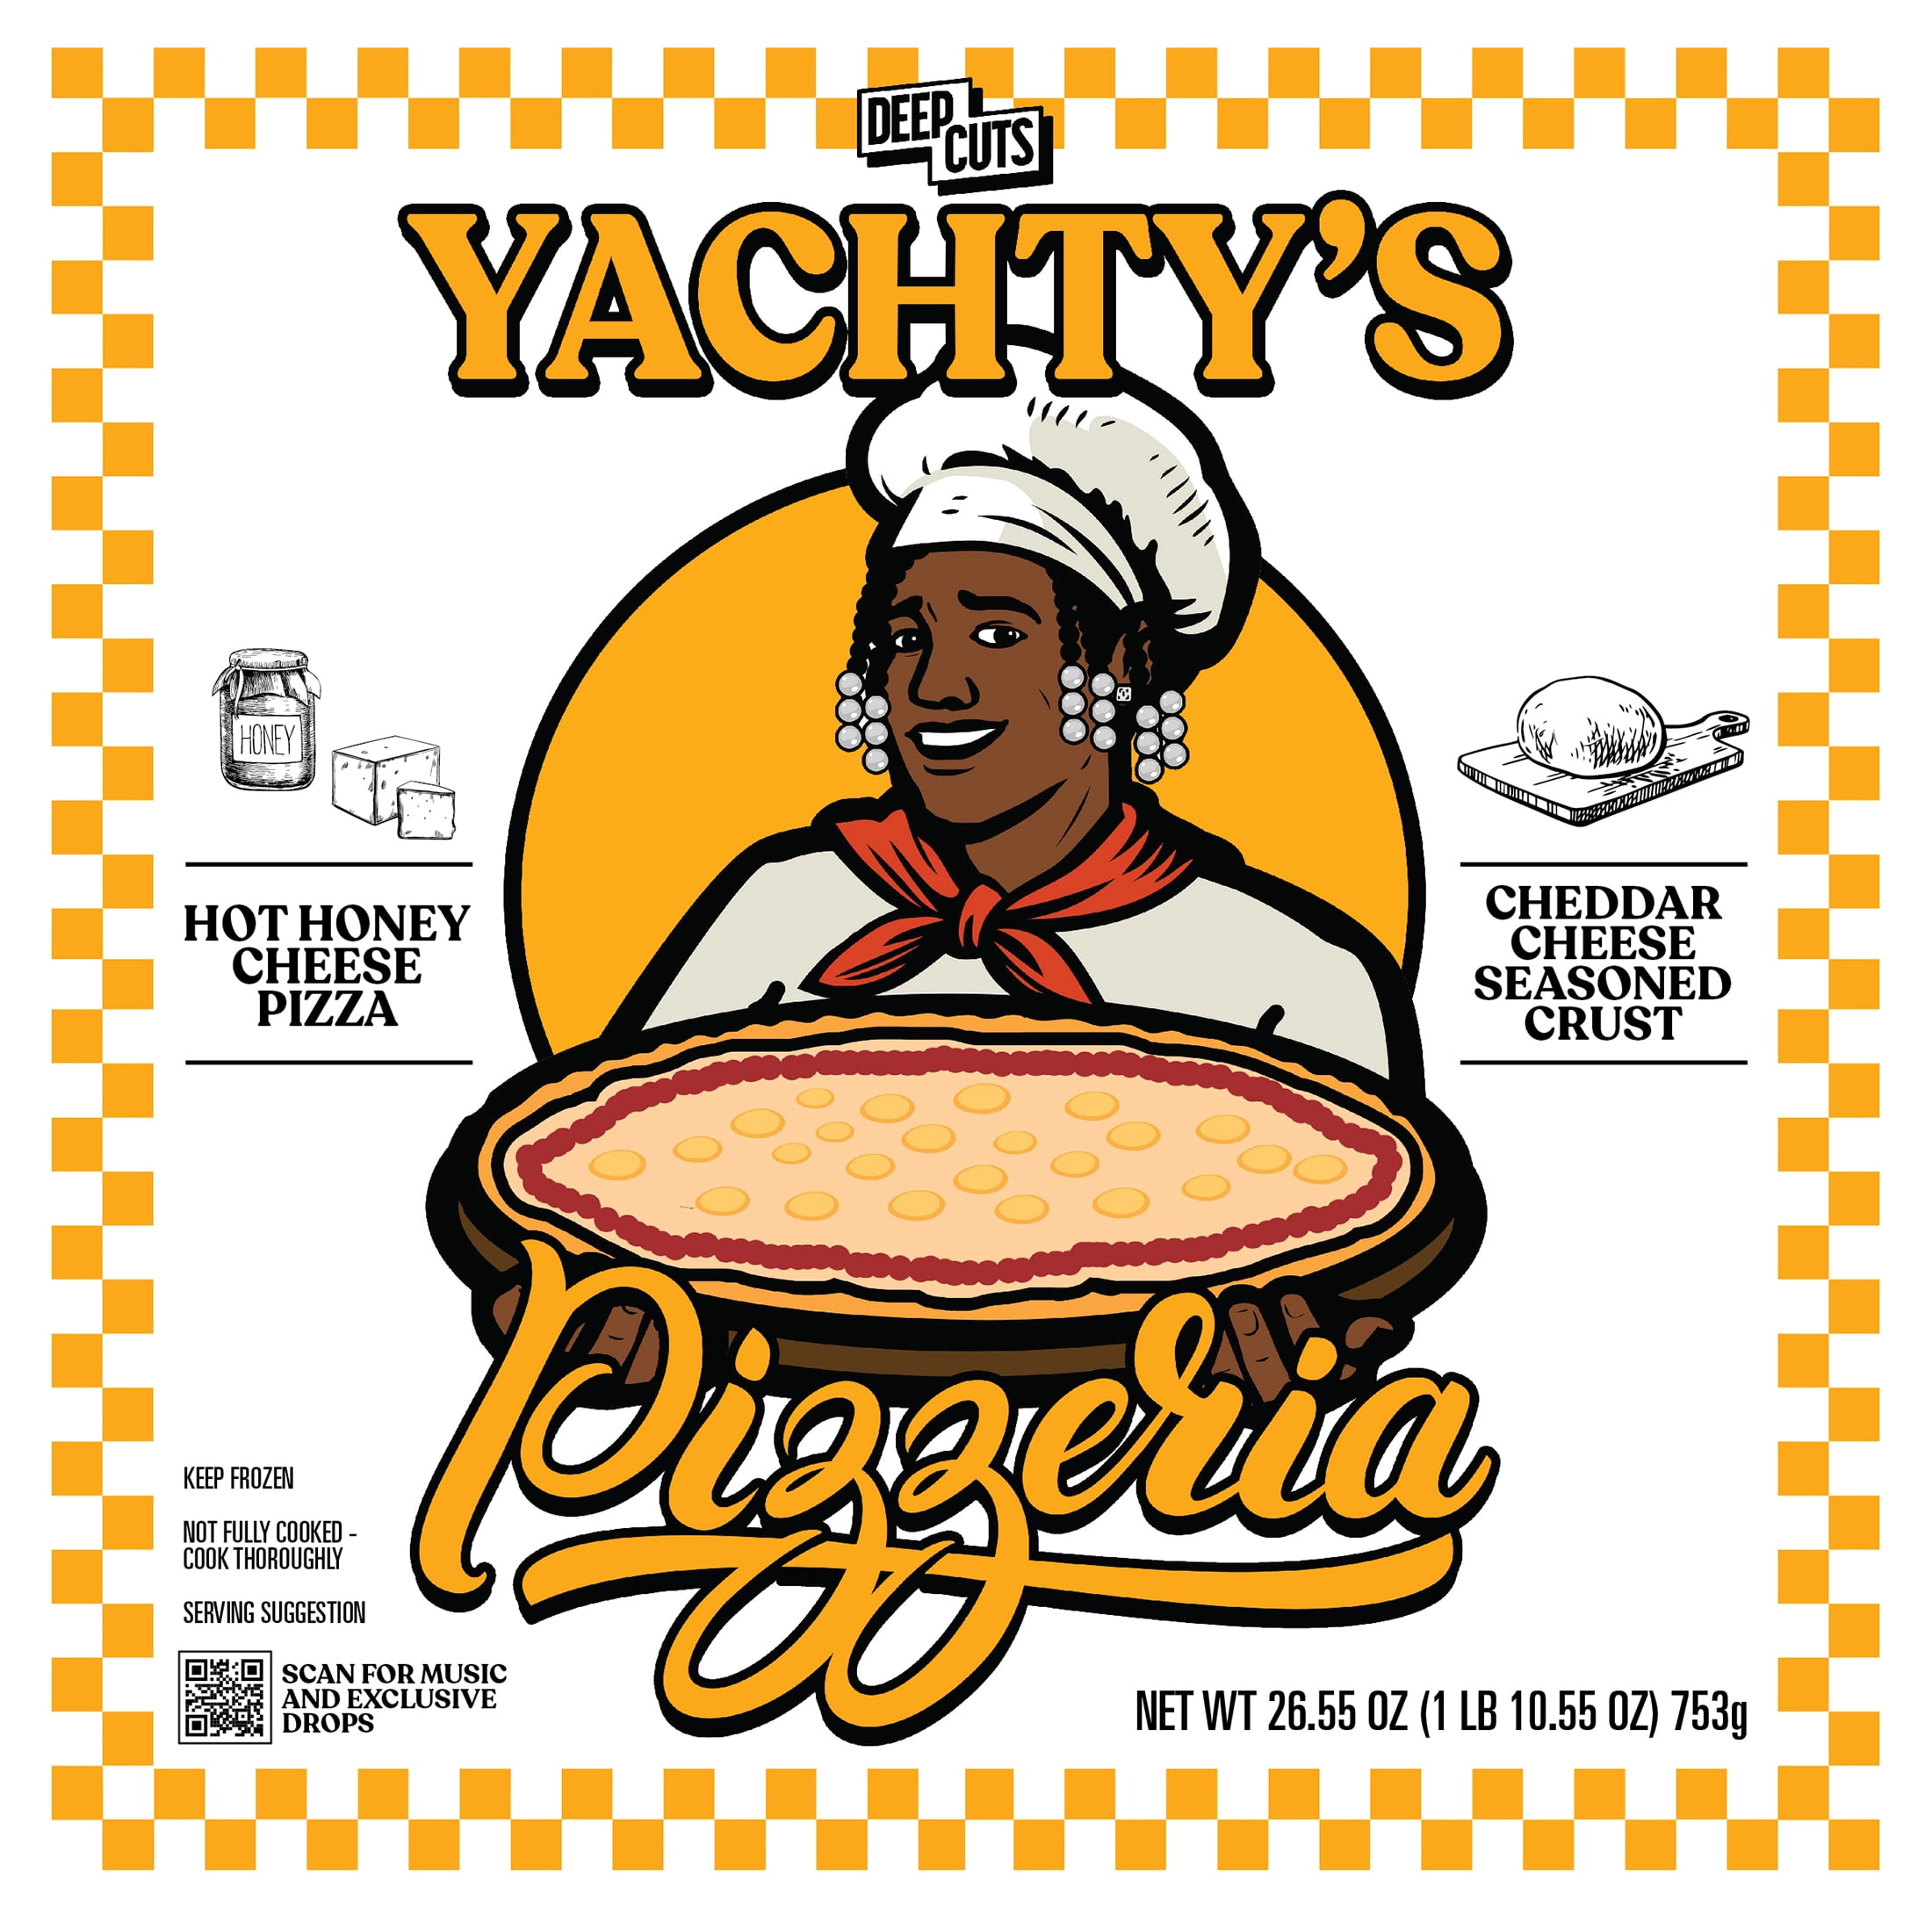 yachty's pizzeria